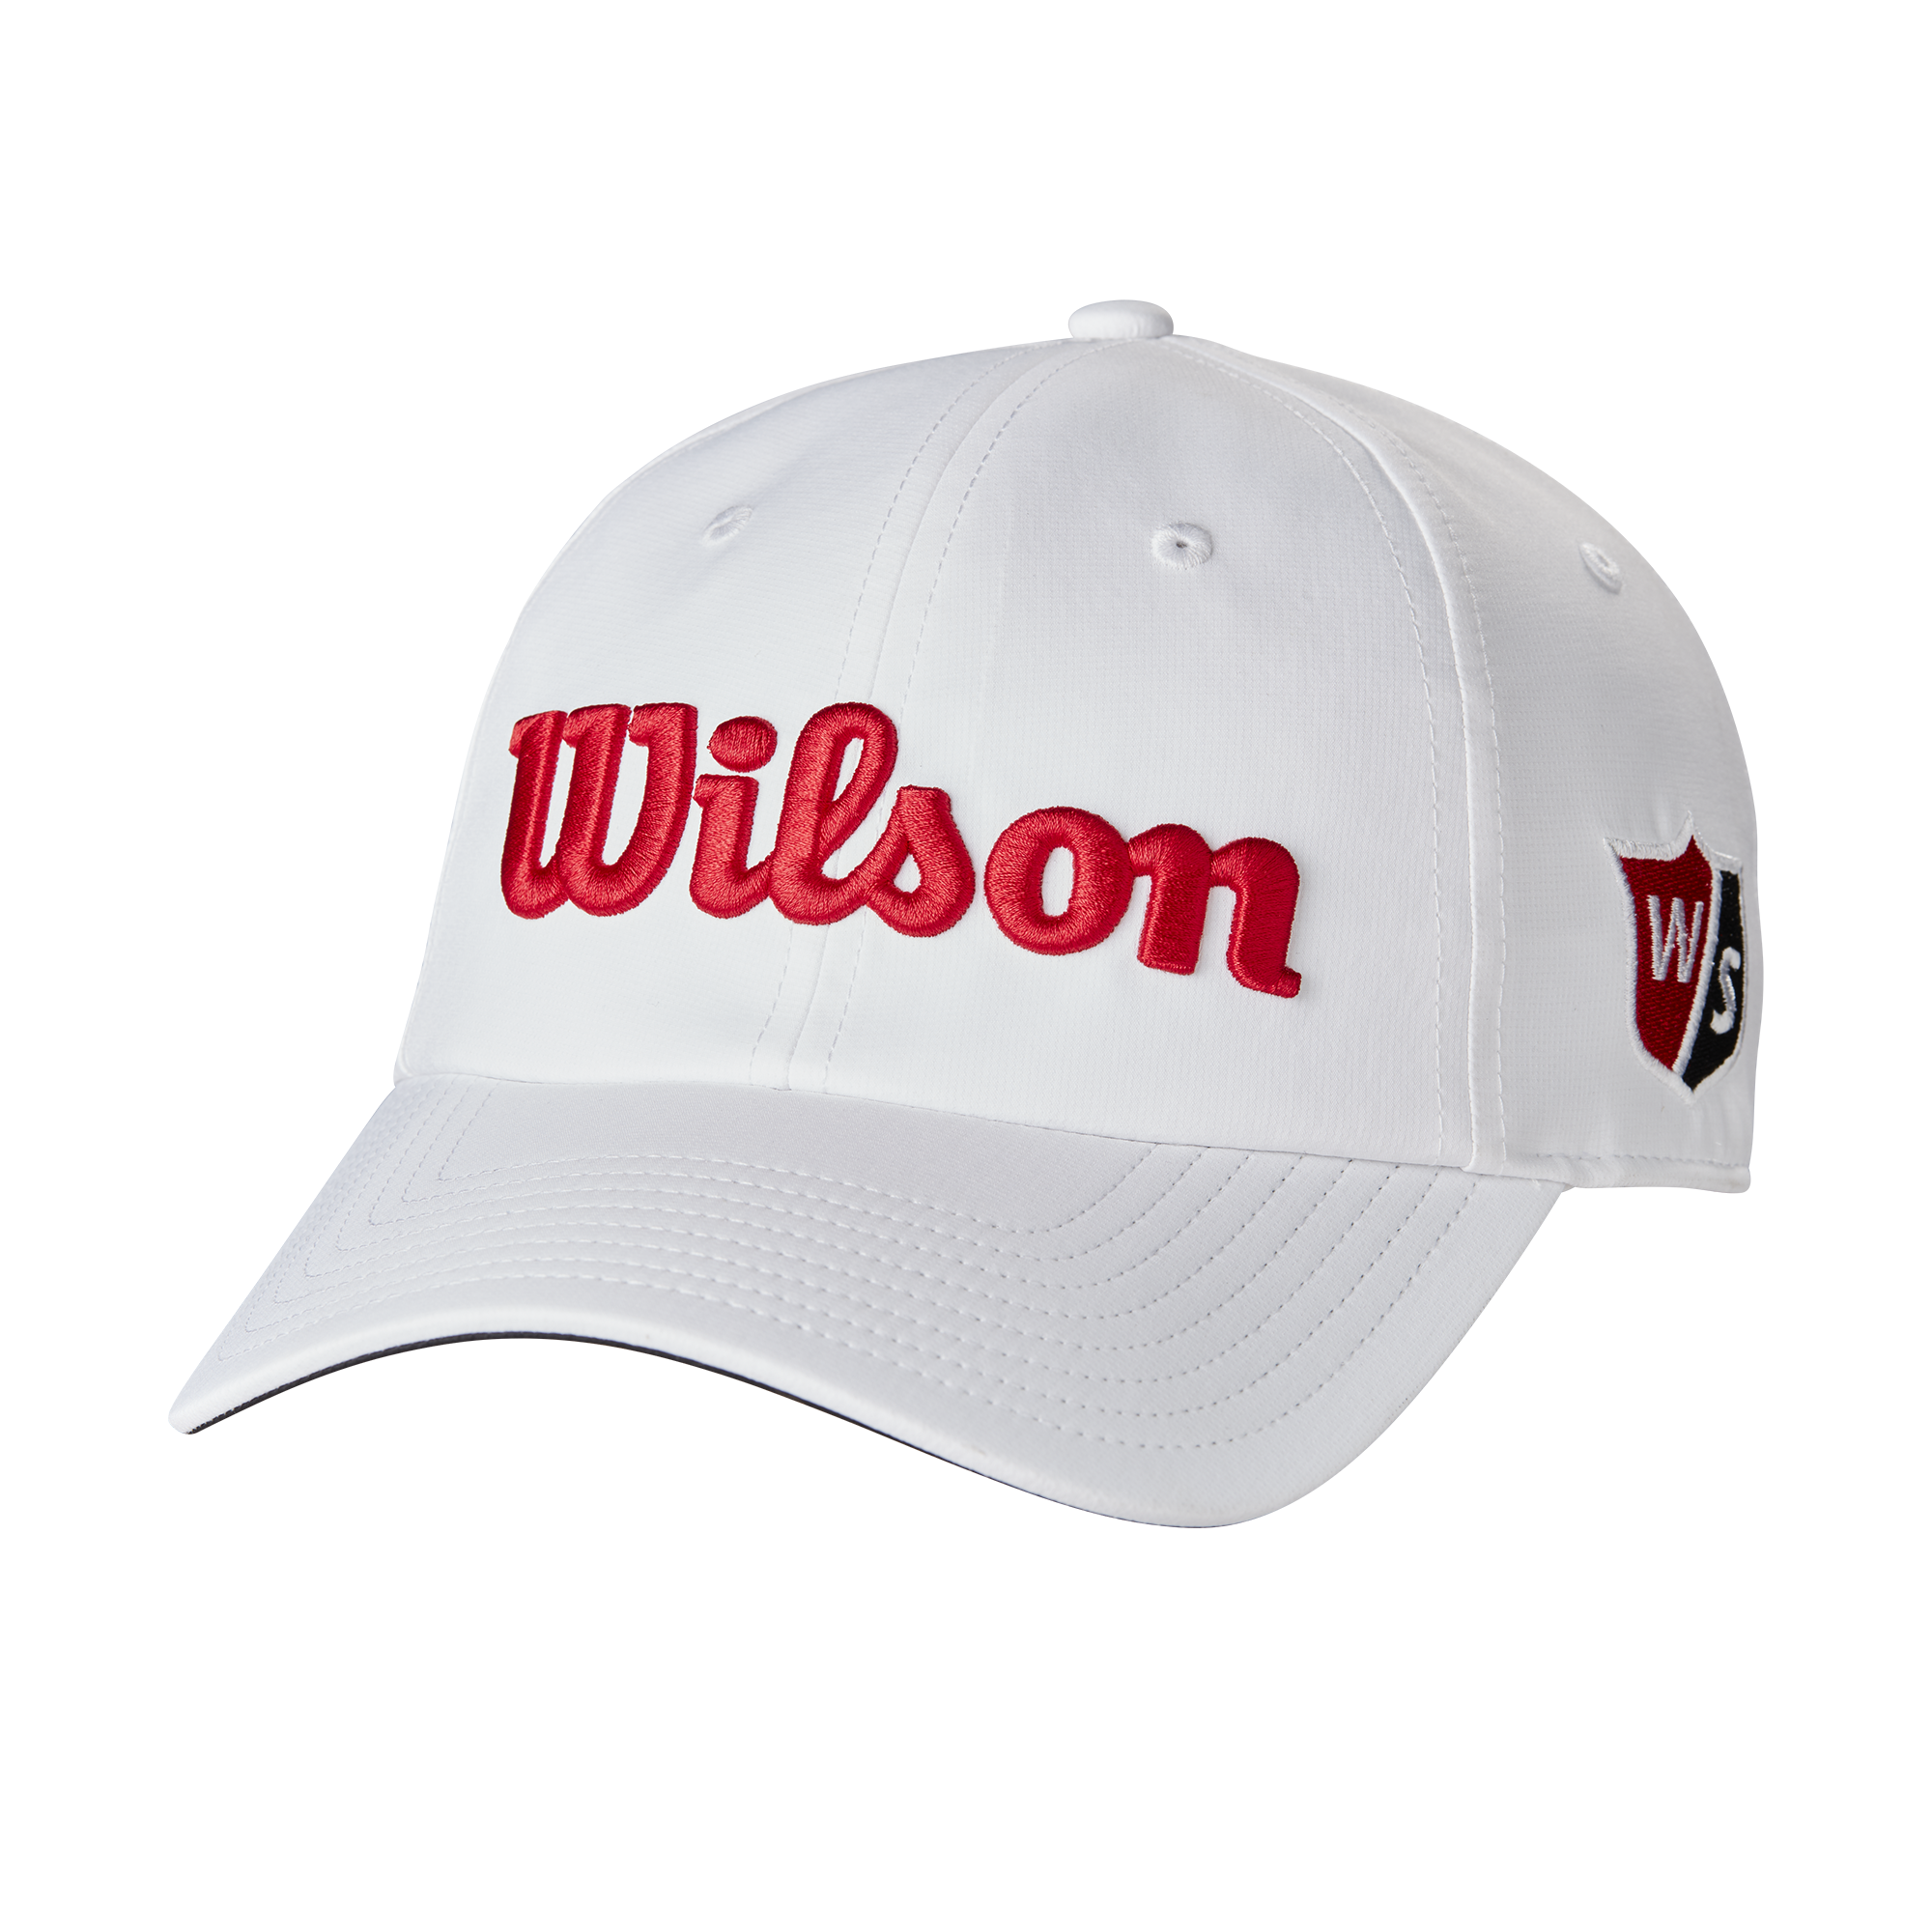 Wilson Pro Tour golfová čepice, bílá/červená